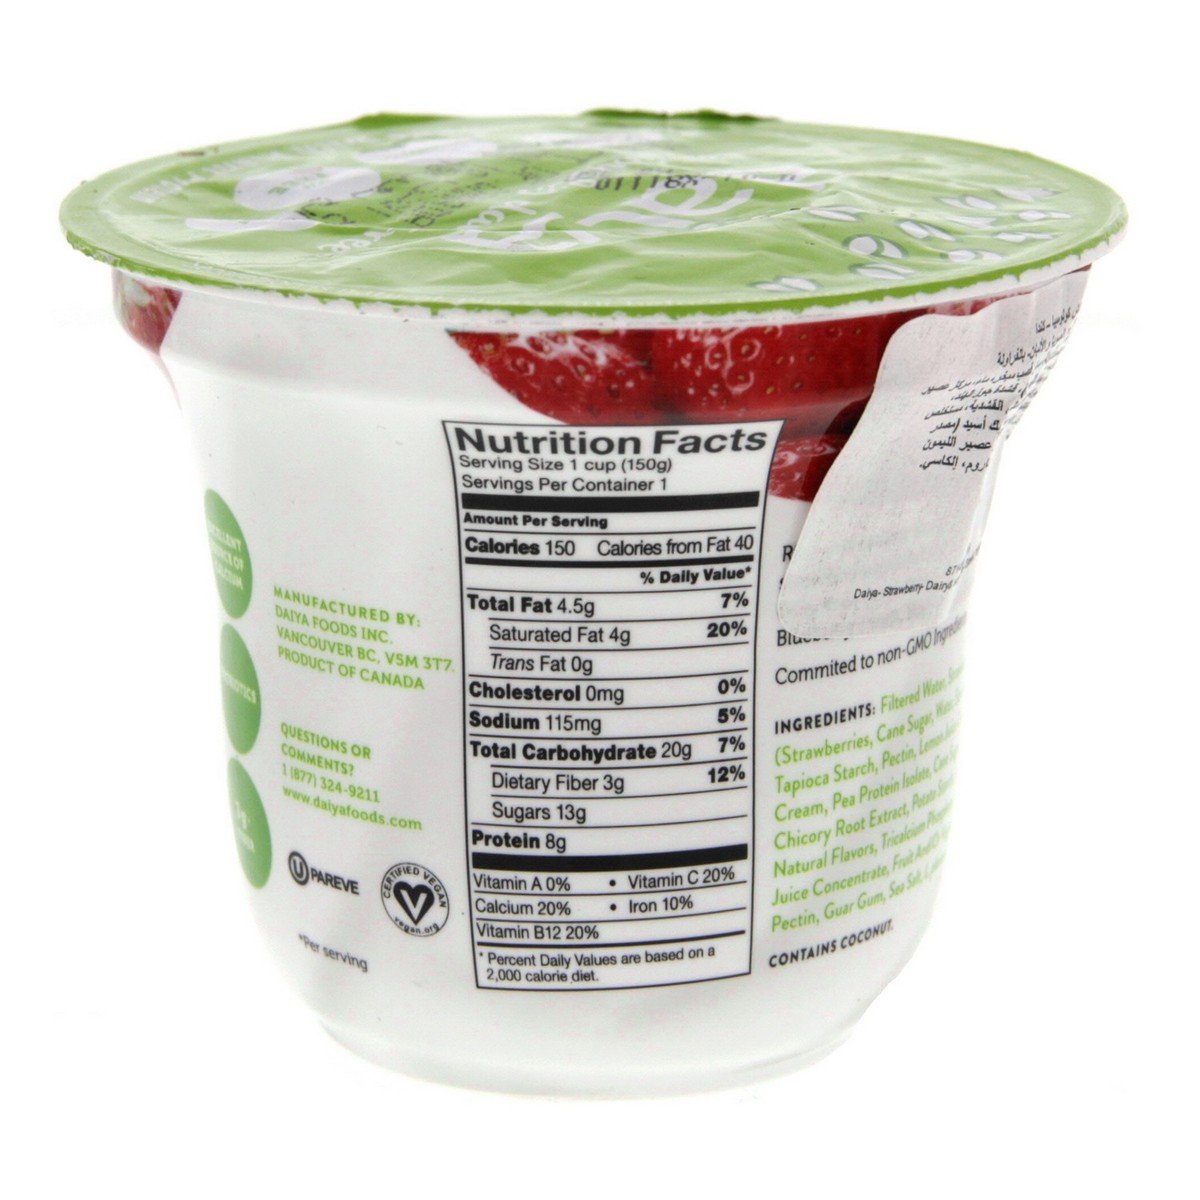 Daiya Strawberry Greek Yogurt 150 g